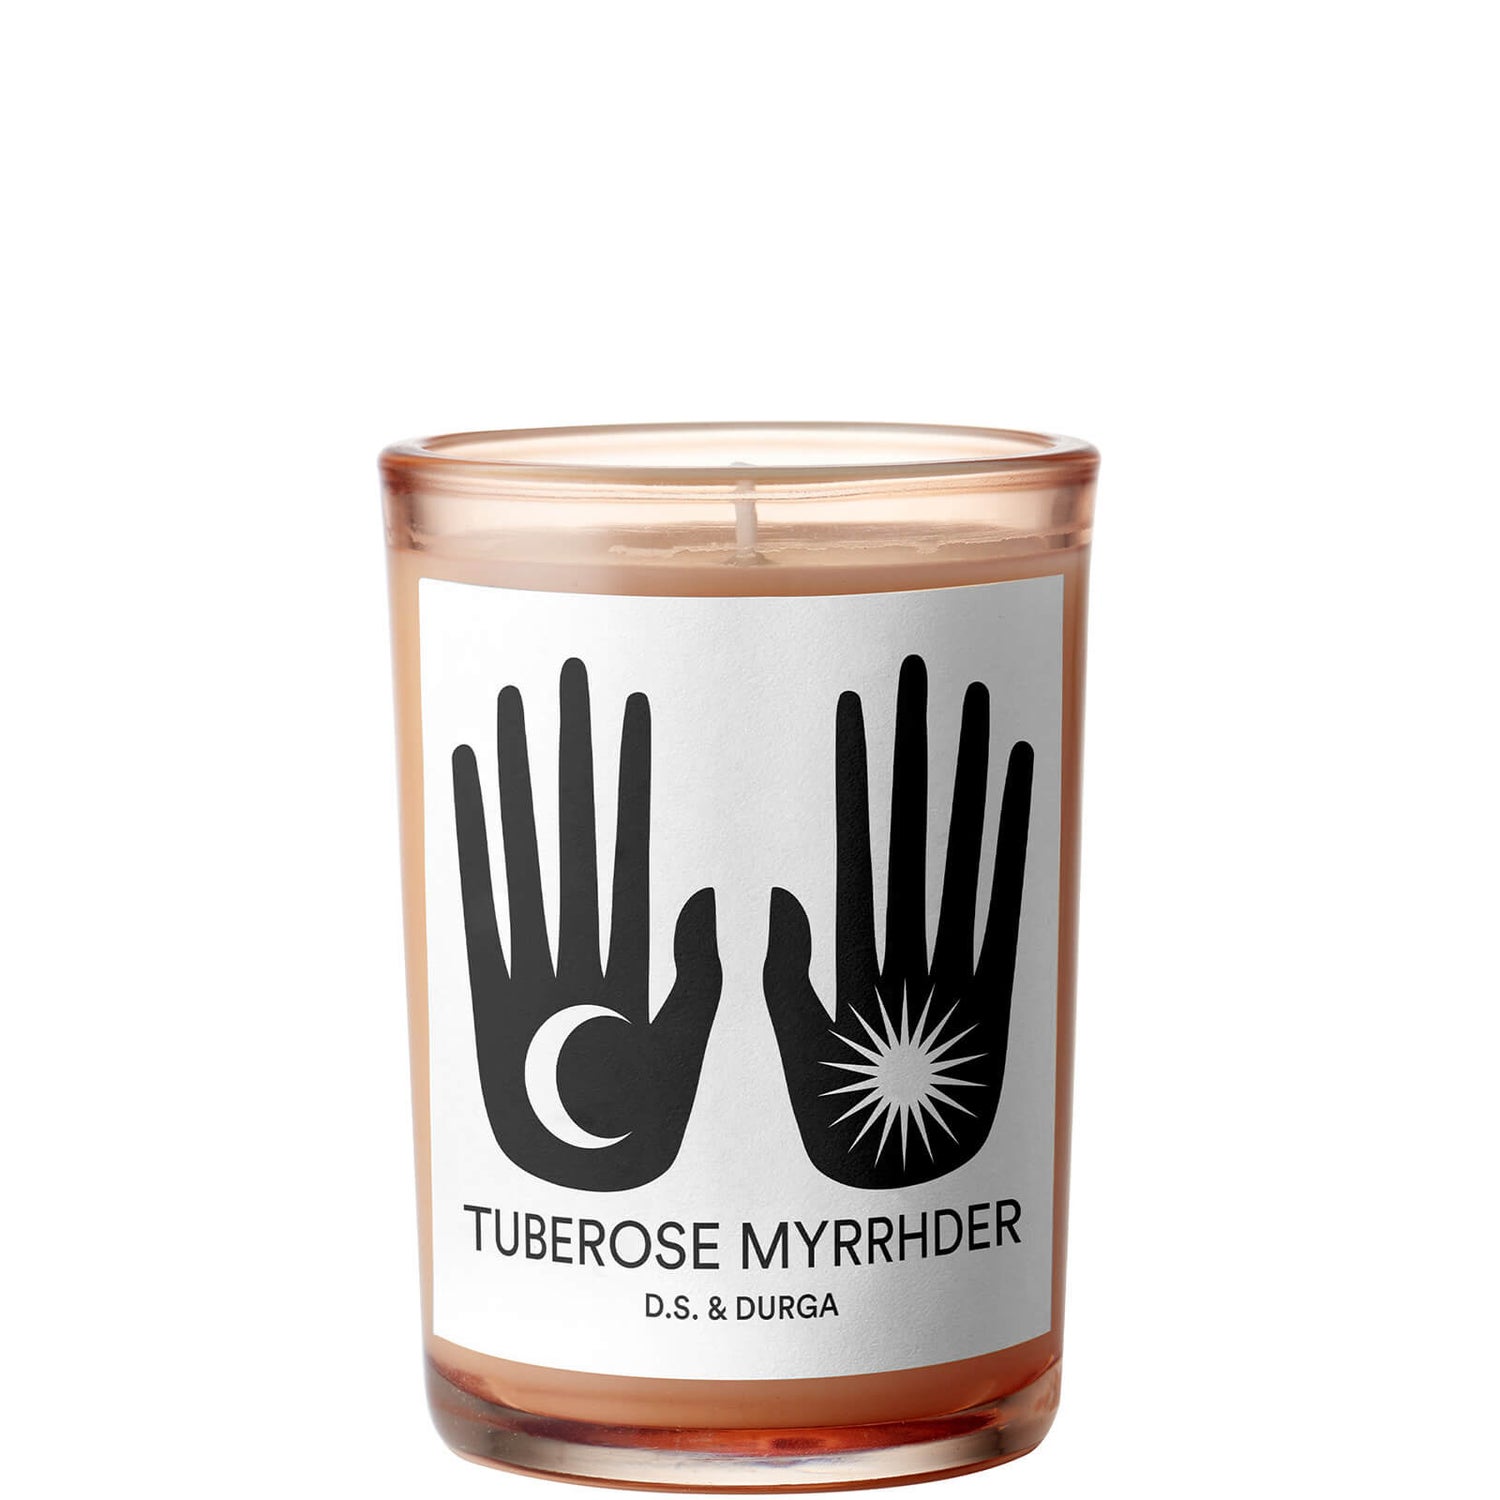 D.S. & DURGA Tuberose Myrrhder Candle